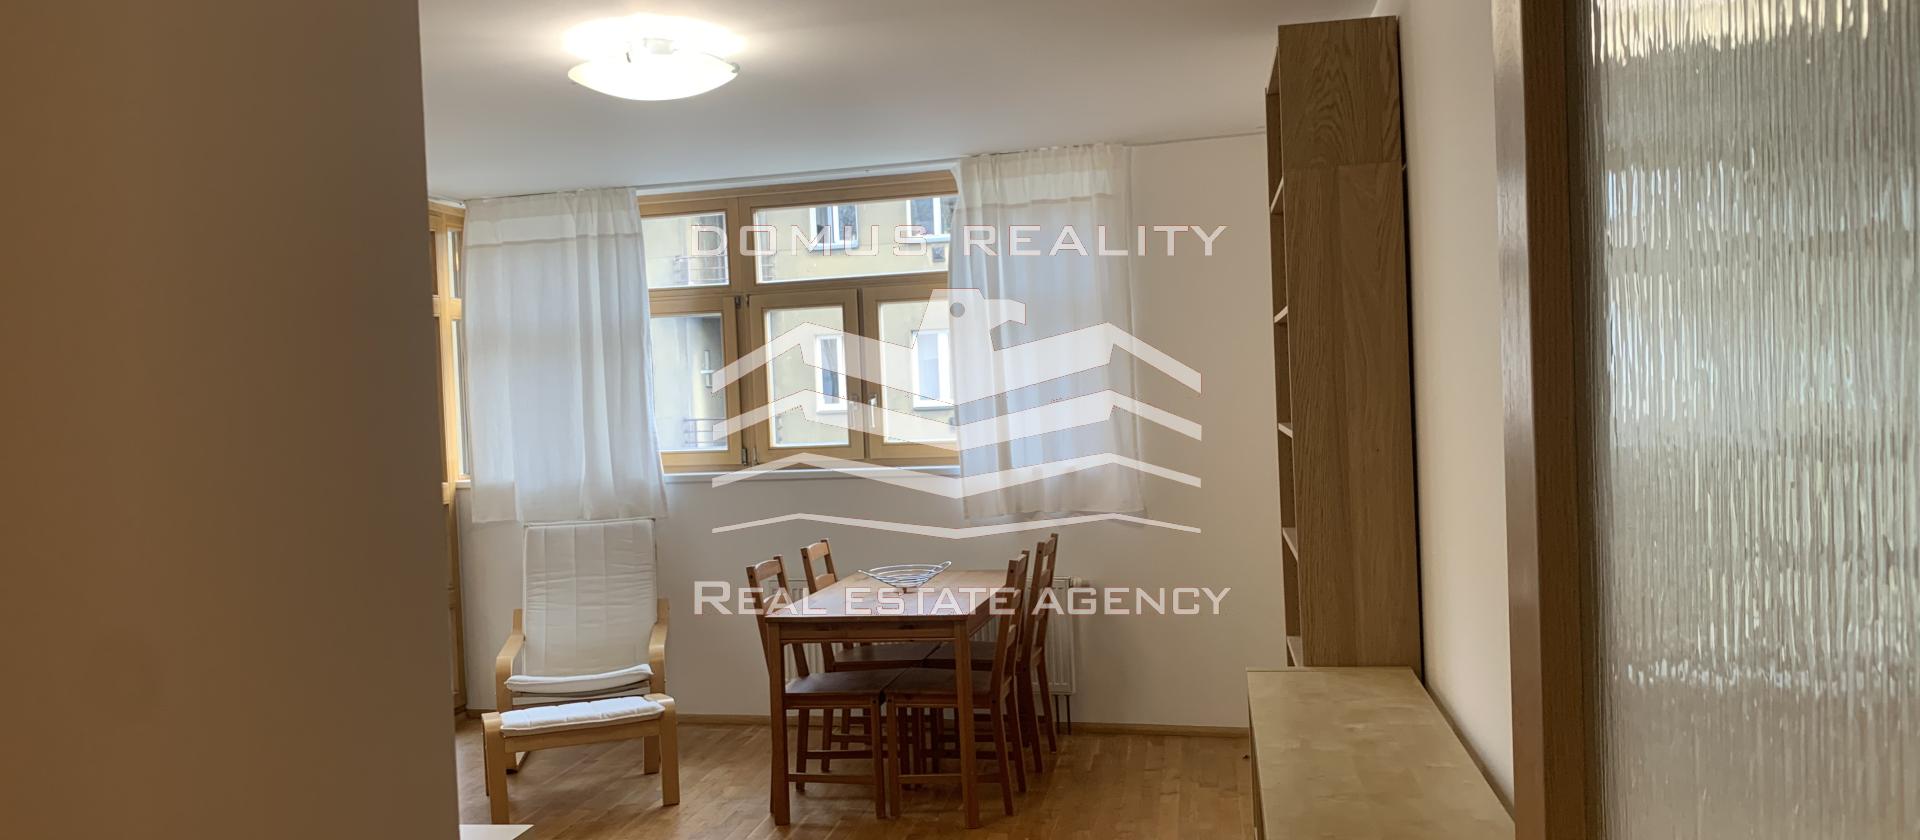 Nabízím  k pronájmu prostorný, světlý byt 3+1 o výměře 80 m2, v klidné ulici Ostrovského, Praha 5, v 2. patře. Velkorysý prostor nabízí bydlení ve velmi krásném bytě.